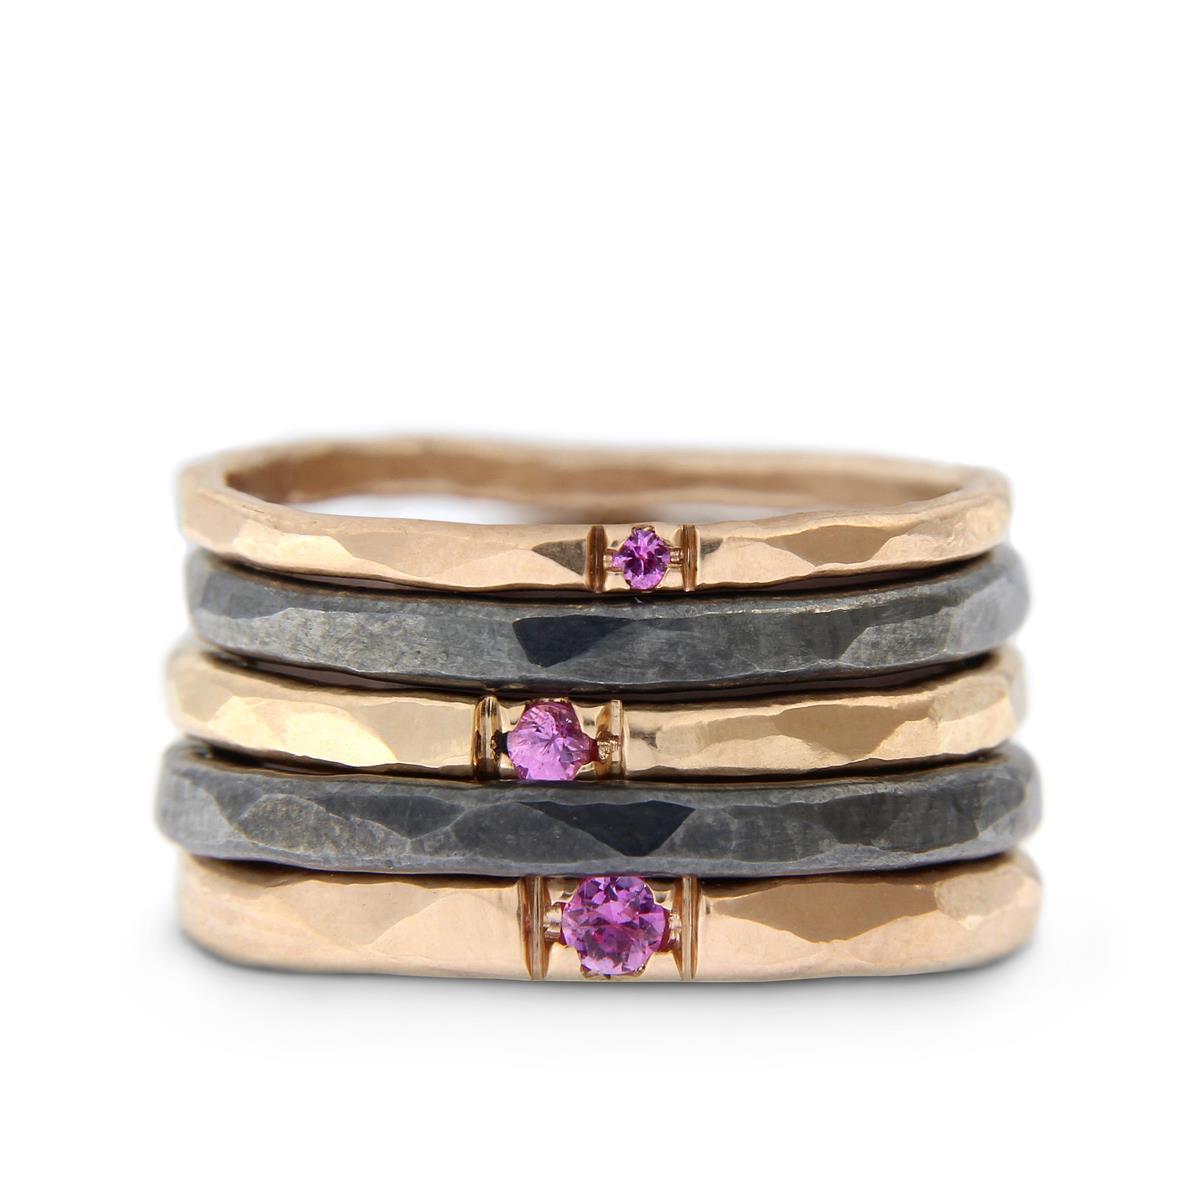 Katie g. Jewellery - Stack - Hammered Rings in 1,5 bis 2,5mm in oxidiertem Sterling silber und 14kt. Roségold mit rosa Saphir